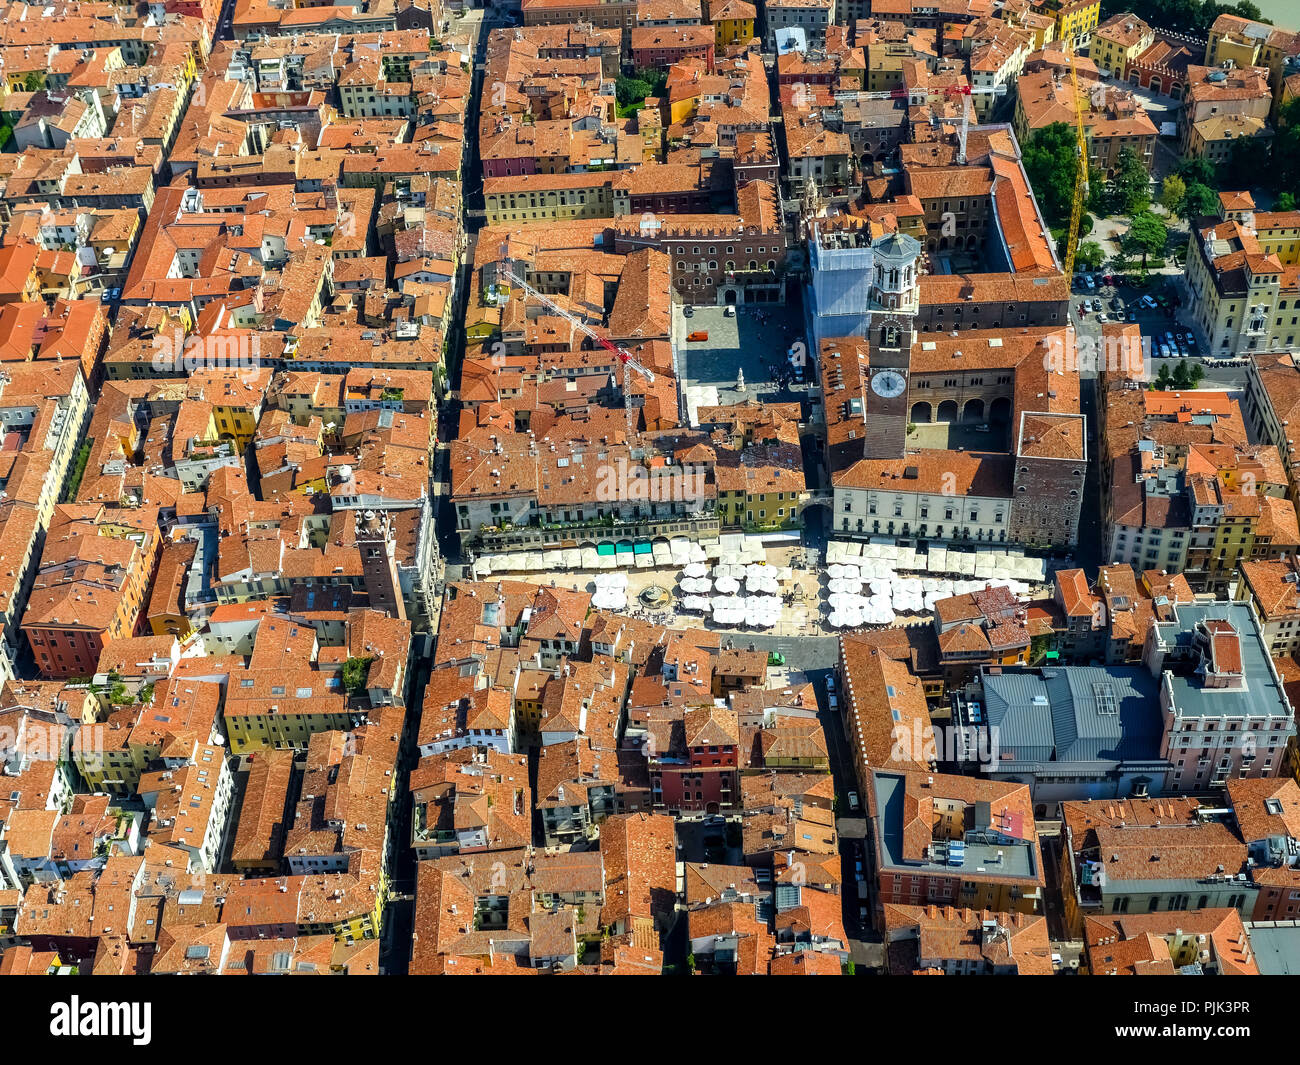 Vista aerea, Piazza delle Erbe e Piazza, Domus Mercatorum, la Torre dei Lamberti, centro di Verona, Verona, Italia settentrionale, Veneto, Italia Foto Stock